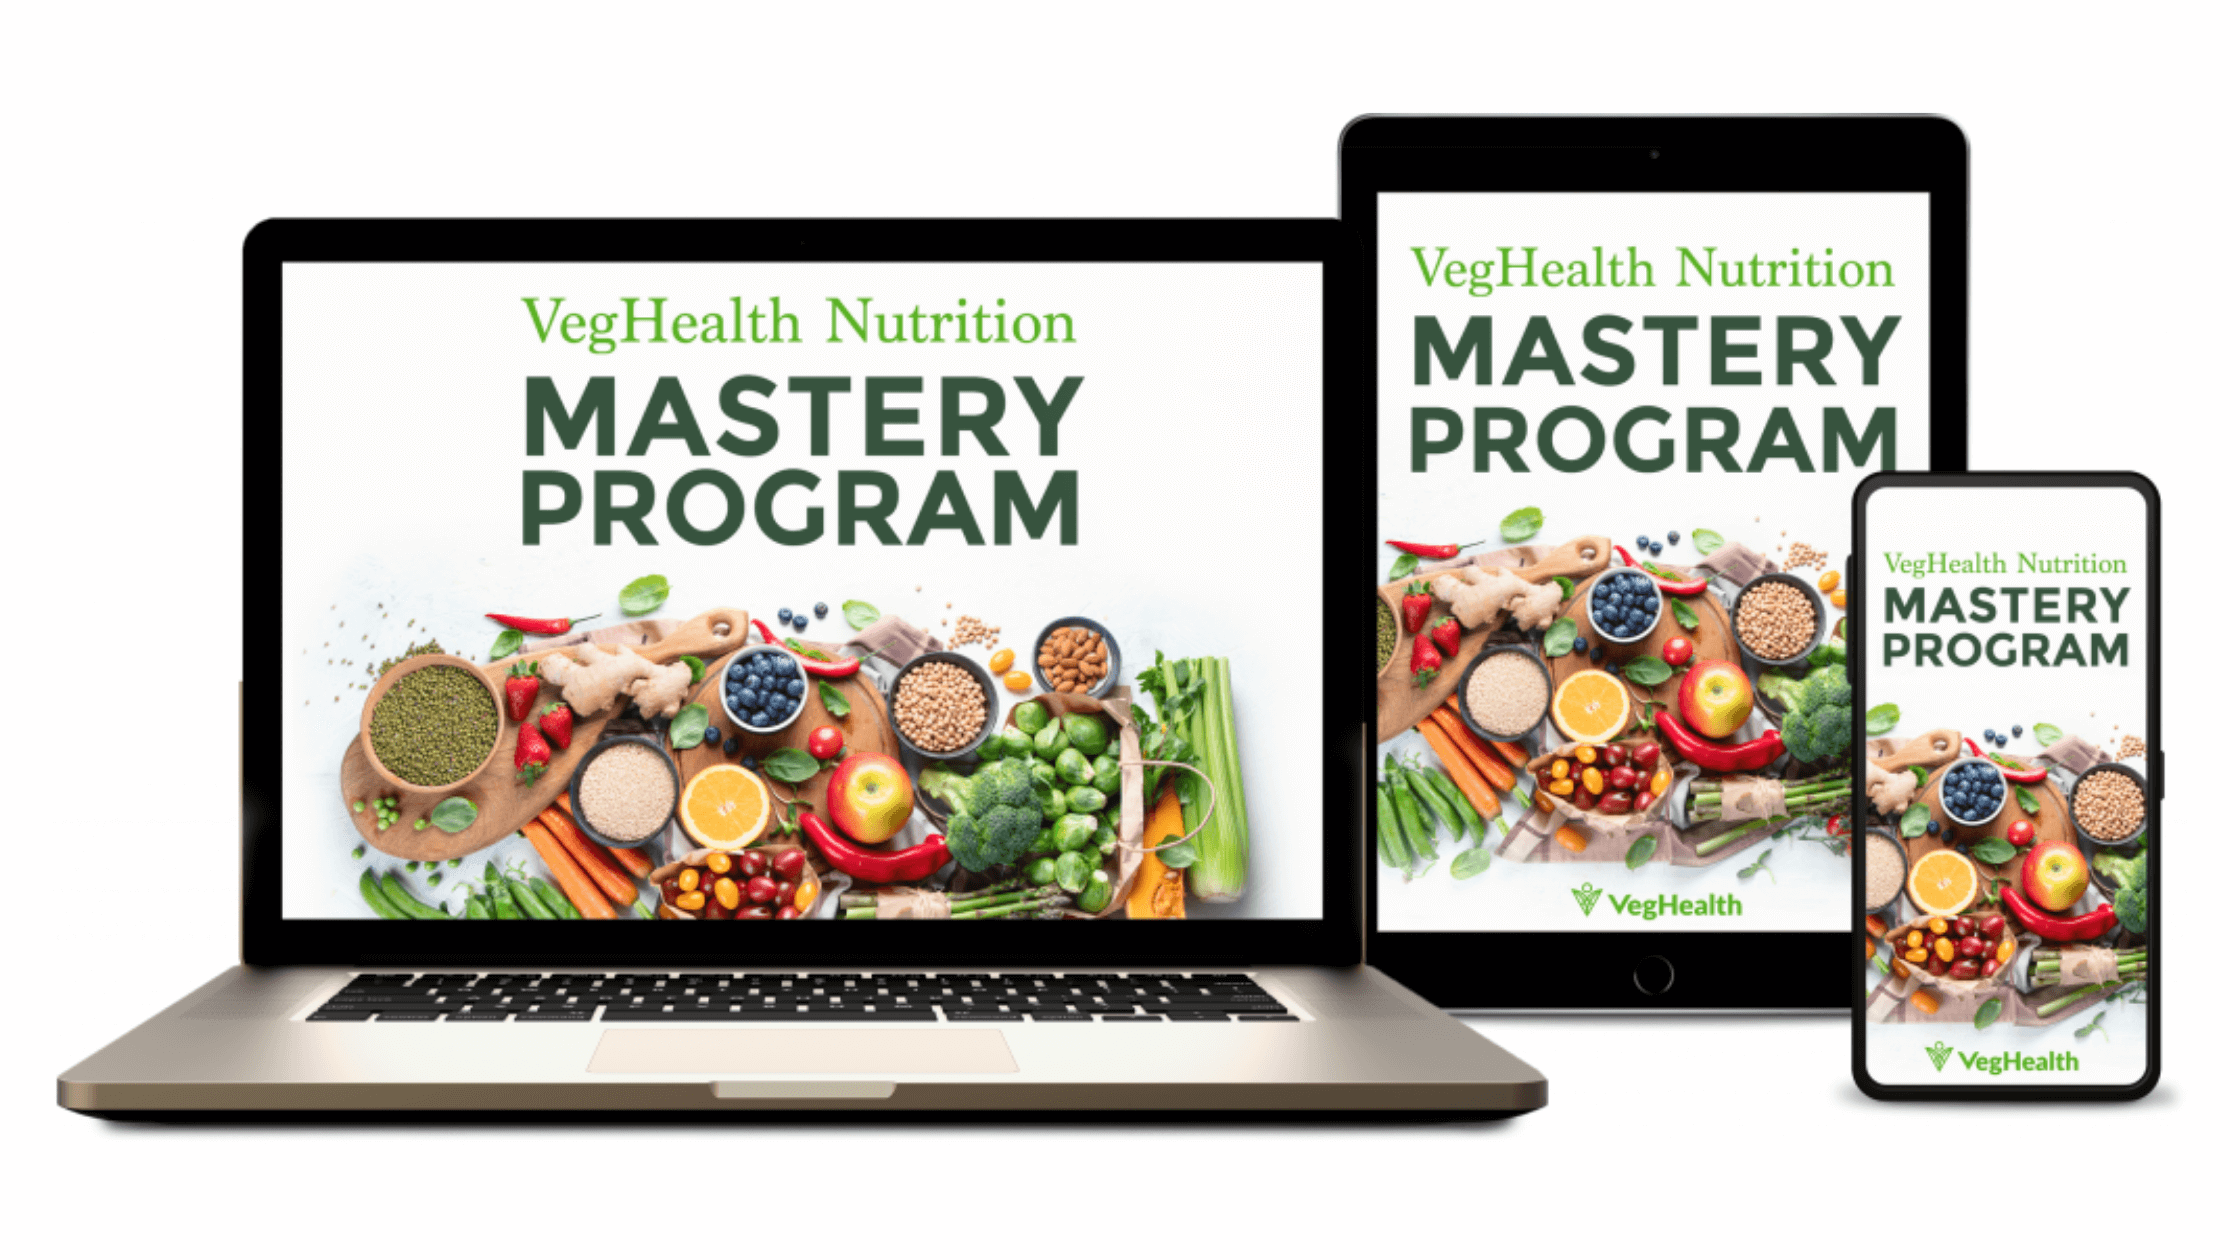 VegHealth Nutrition Mastery Program Reviews 